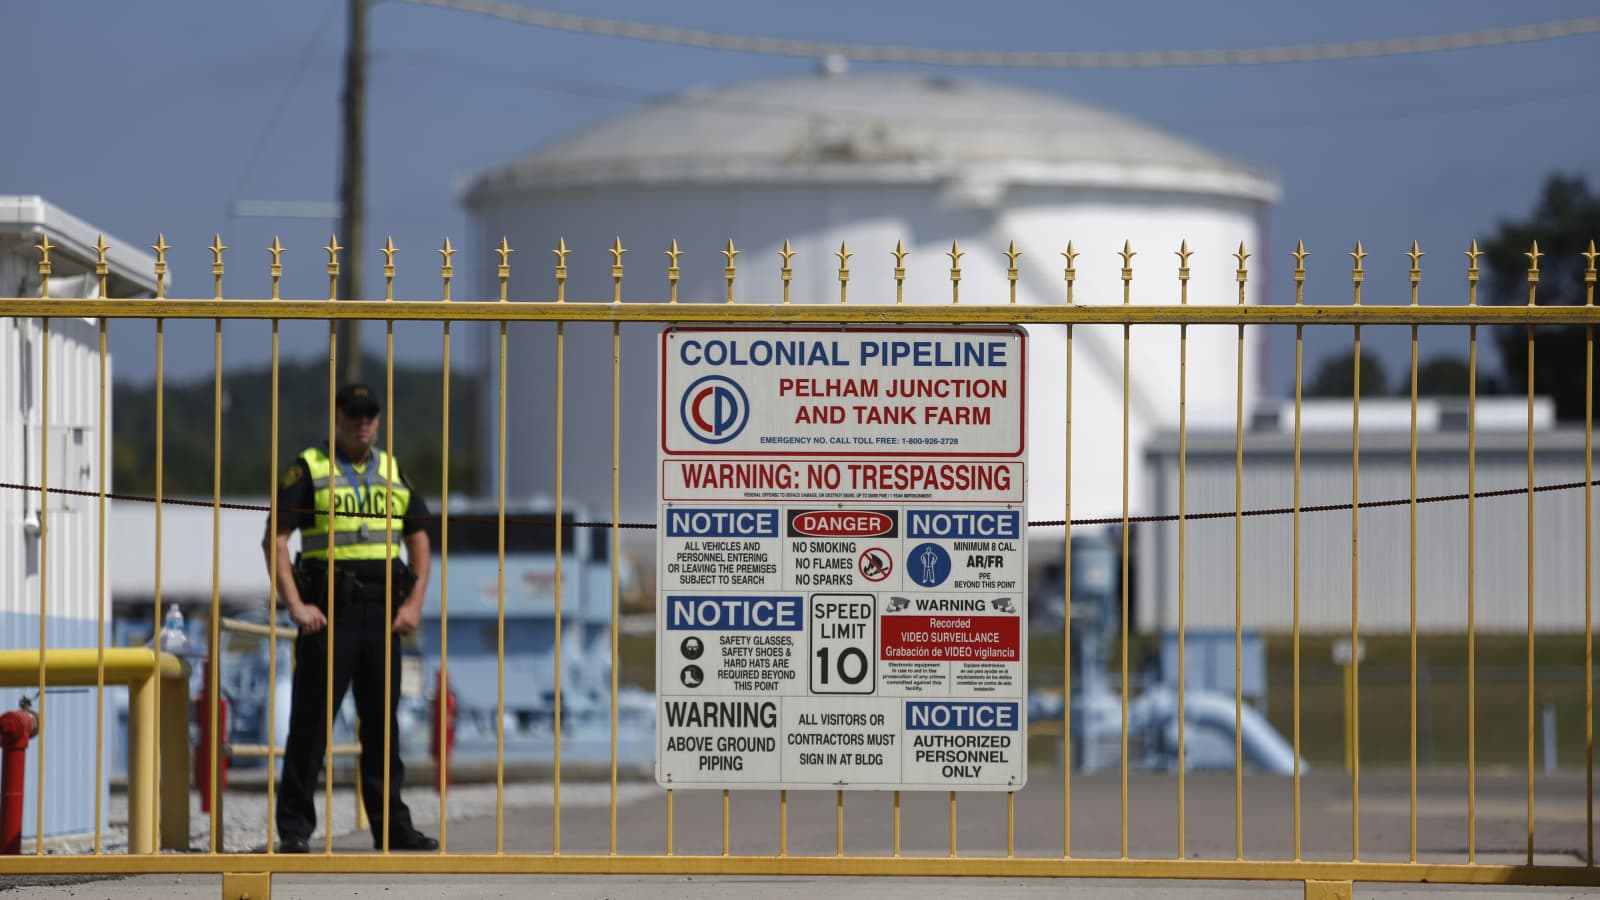 ΗΠΑ: Ελλείψεις καυσίμων σε βενζινάδικα μετά την κυβερνοεπίθεση στην Colonial Pipeline